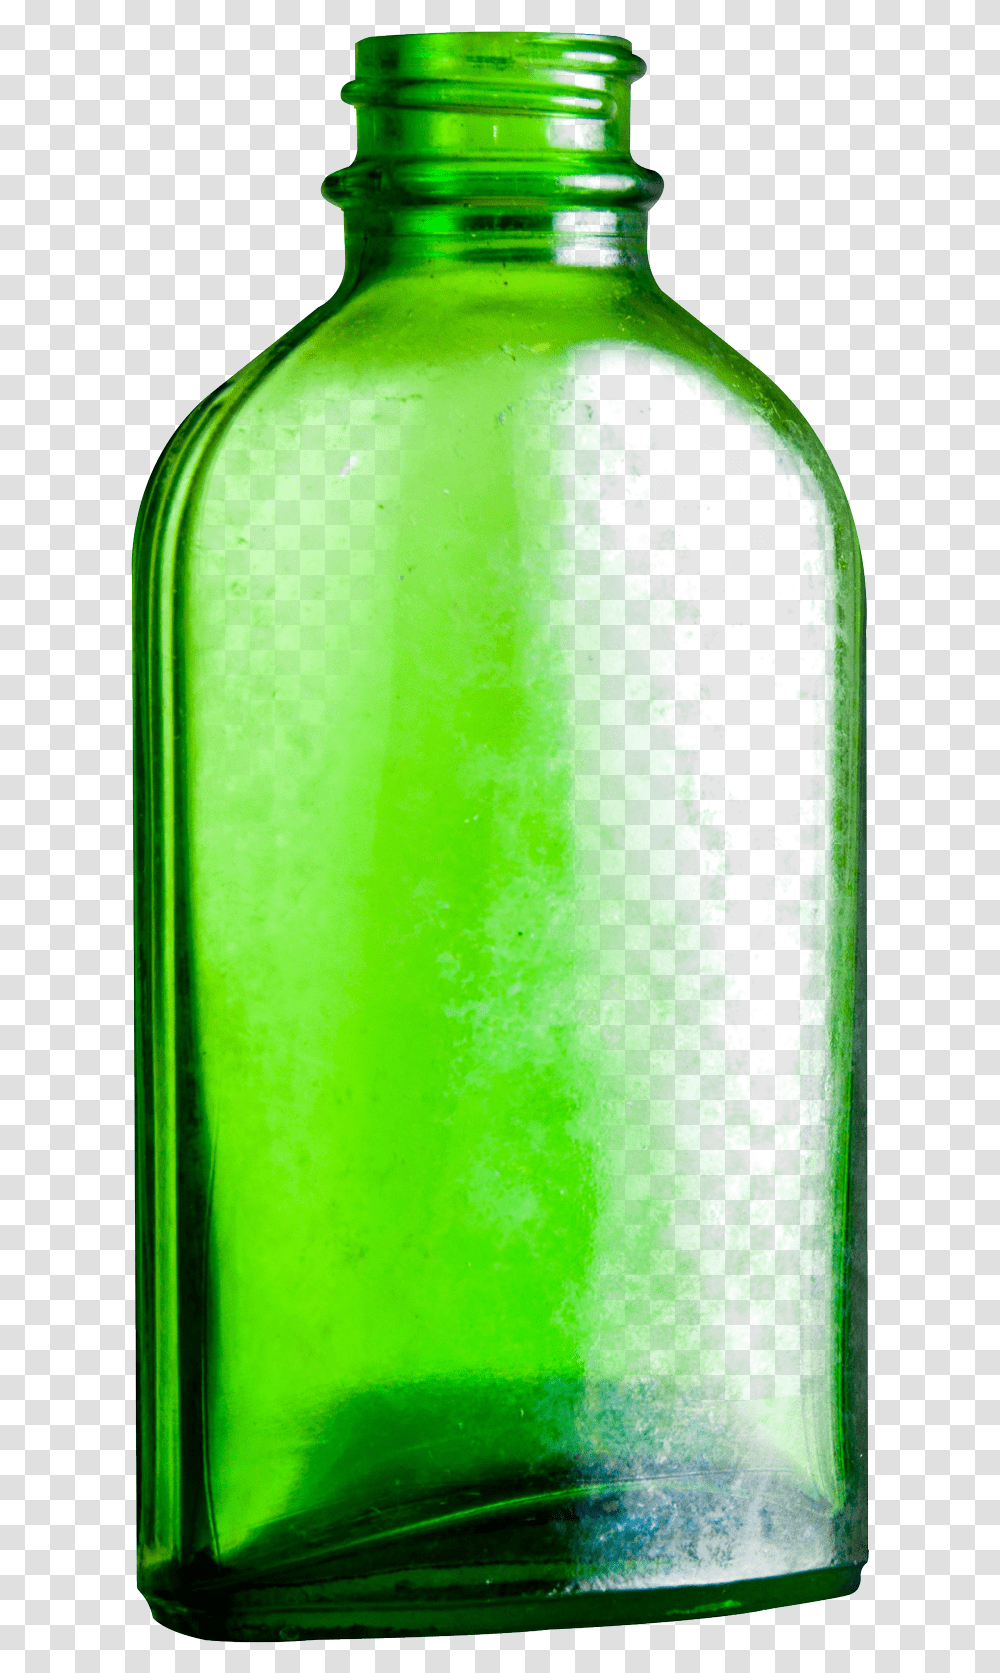 Empty Glass Bottle Green Glass Bottle Background, Alcohol, Beverage, Drink, Beer Transparent Png